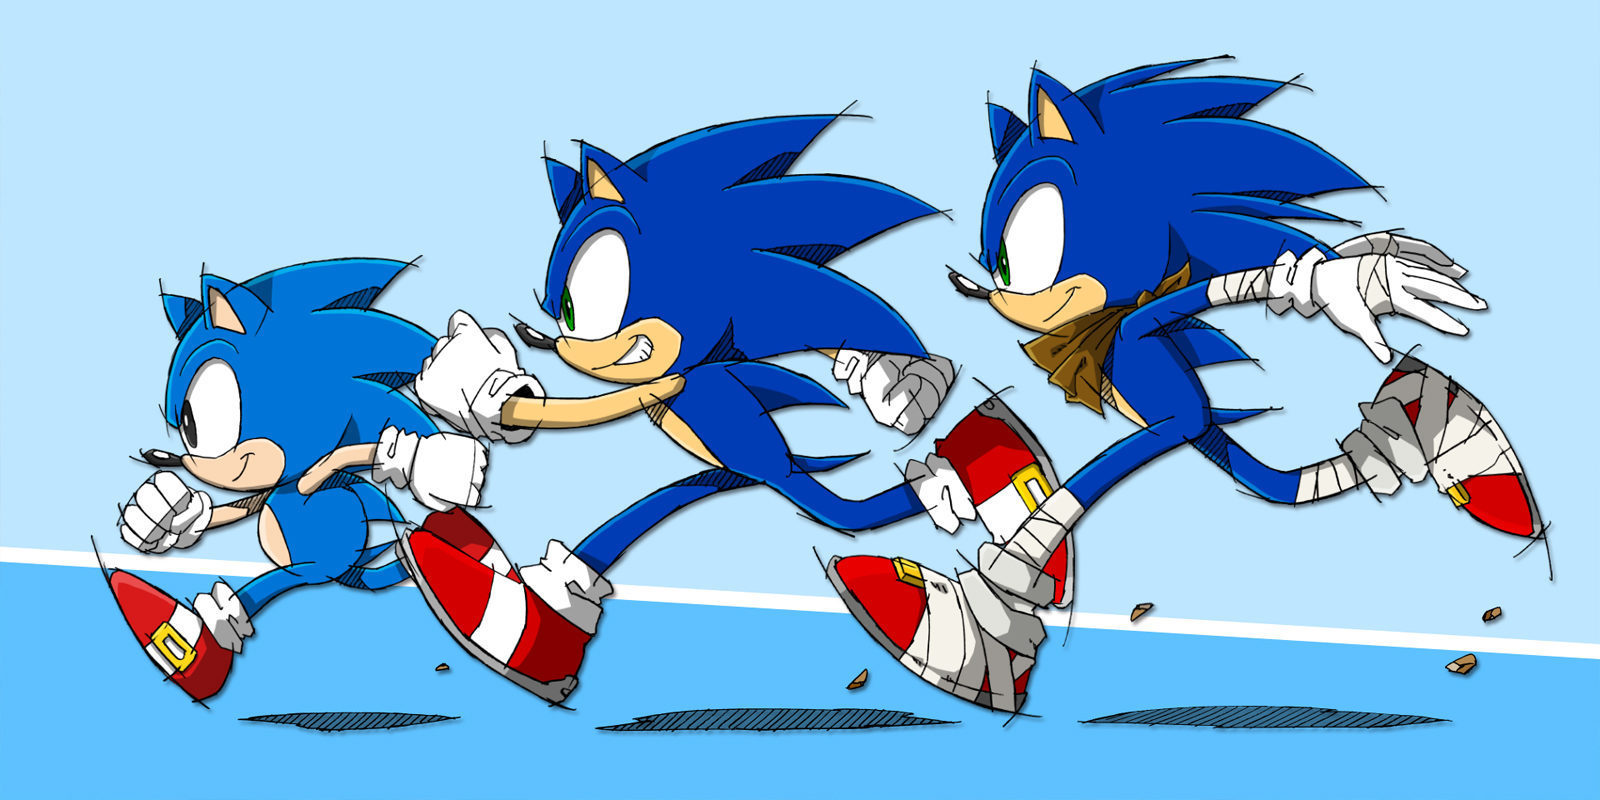 Especial 25 aniversario de Sonic: Repasamos uno a uno los 25 años de historia del erizo